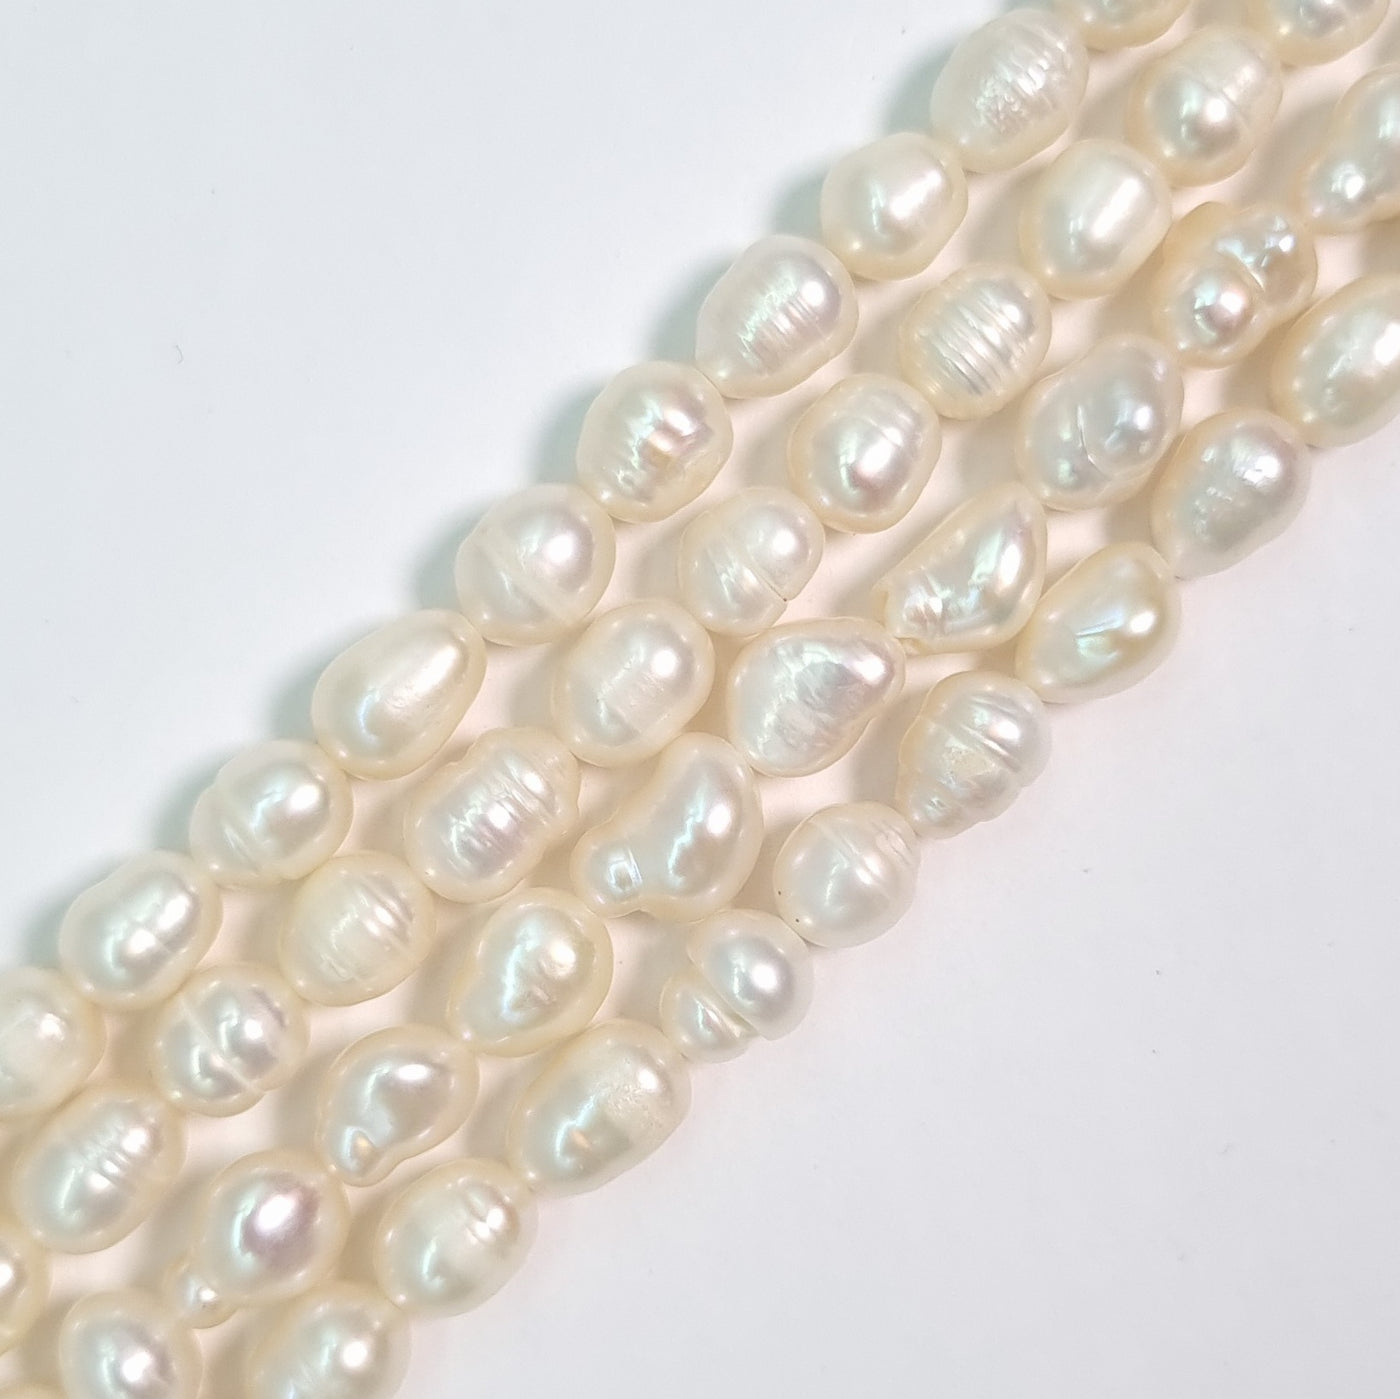 Perla Cultivada de 4-6 mm. por tira O2507